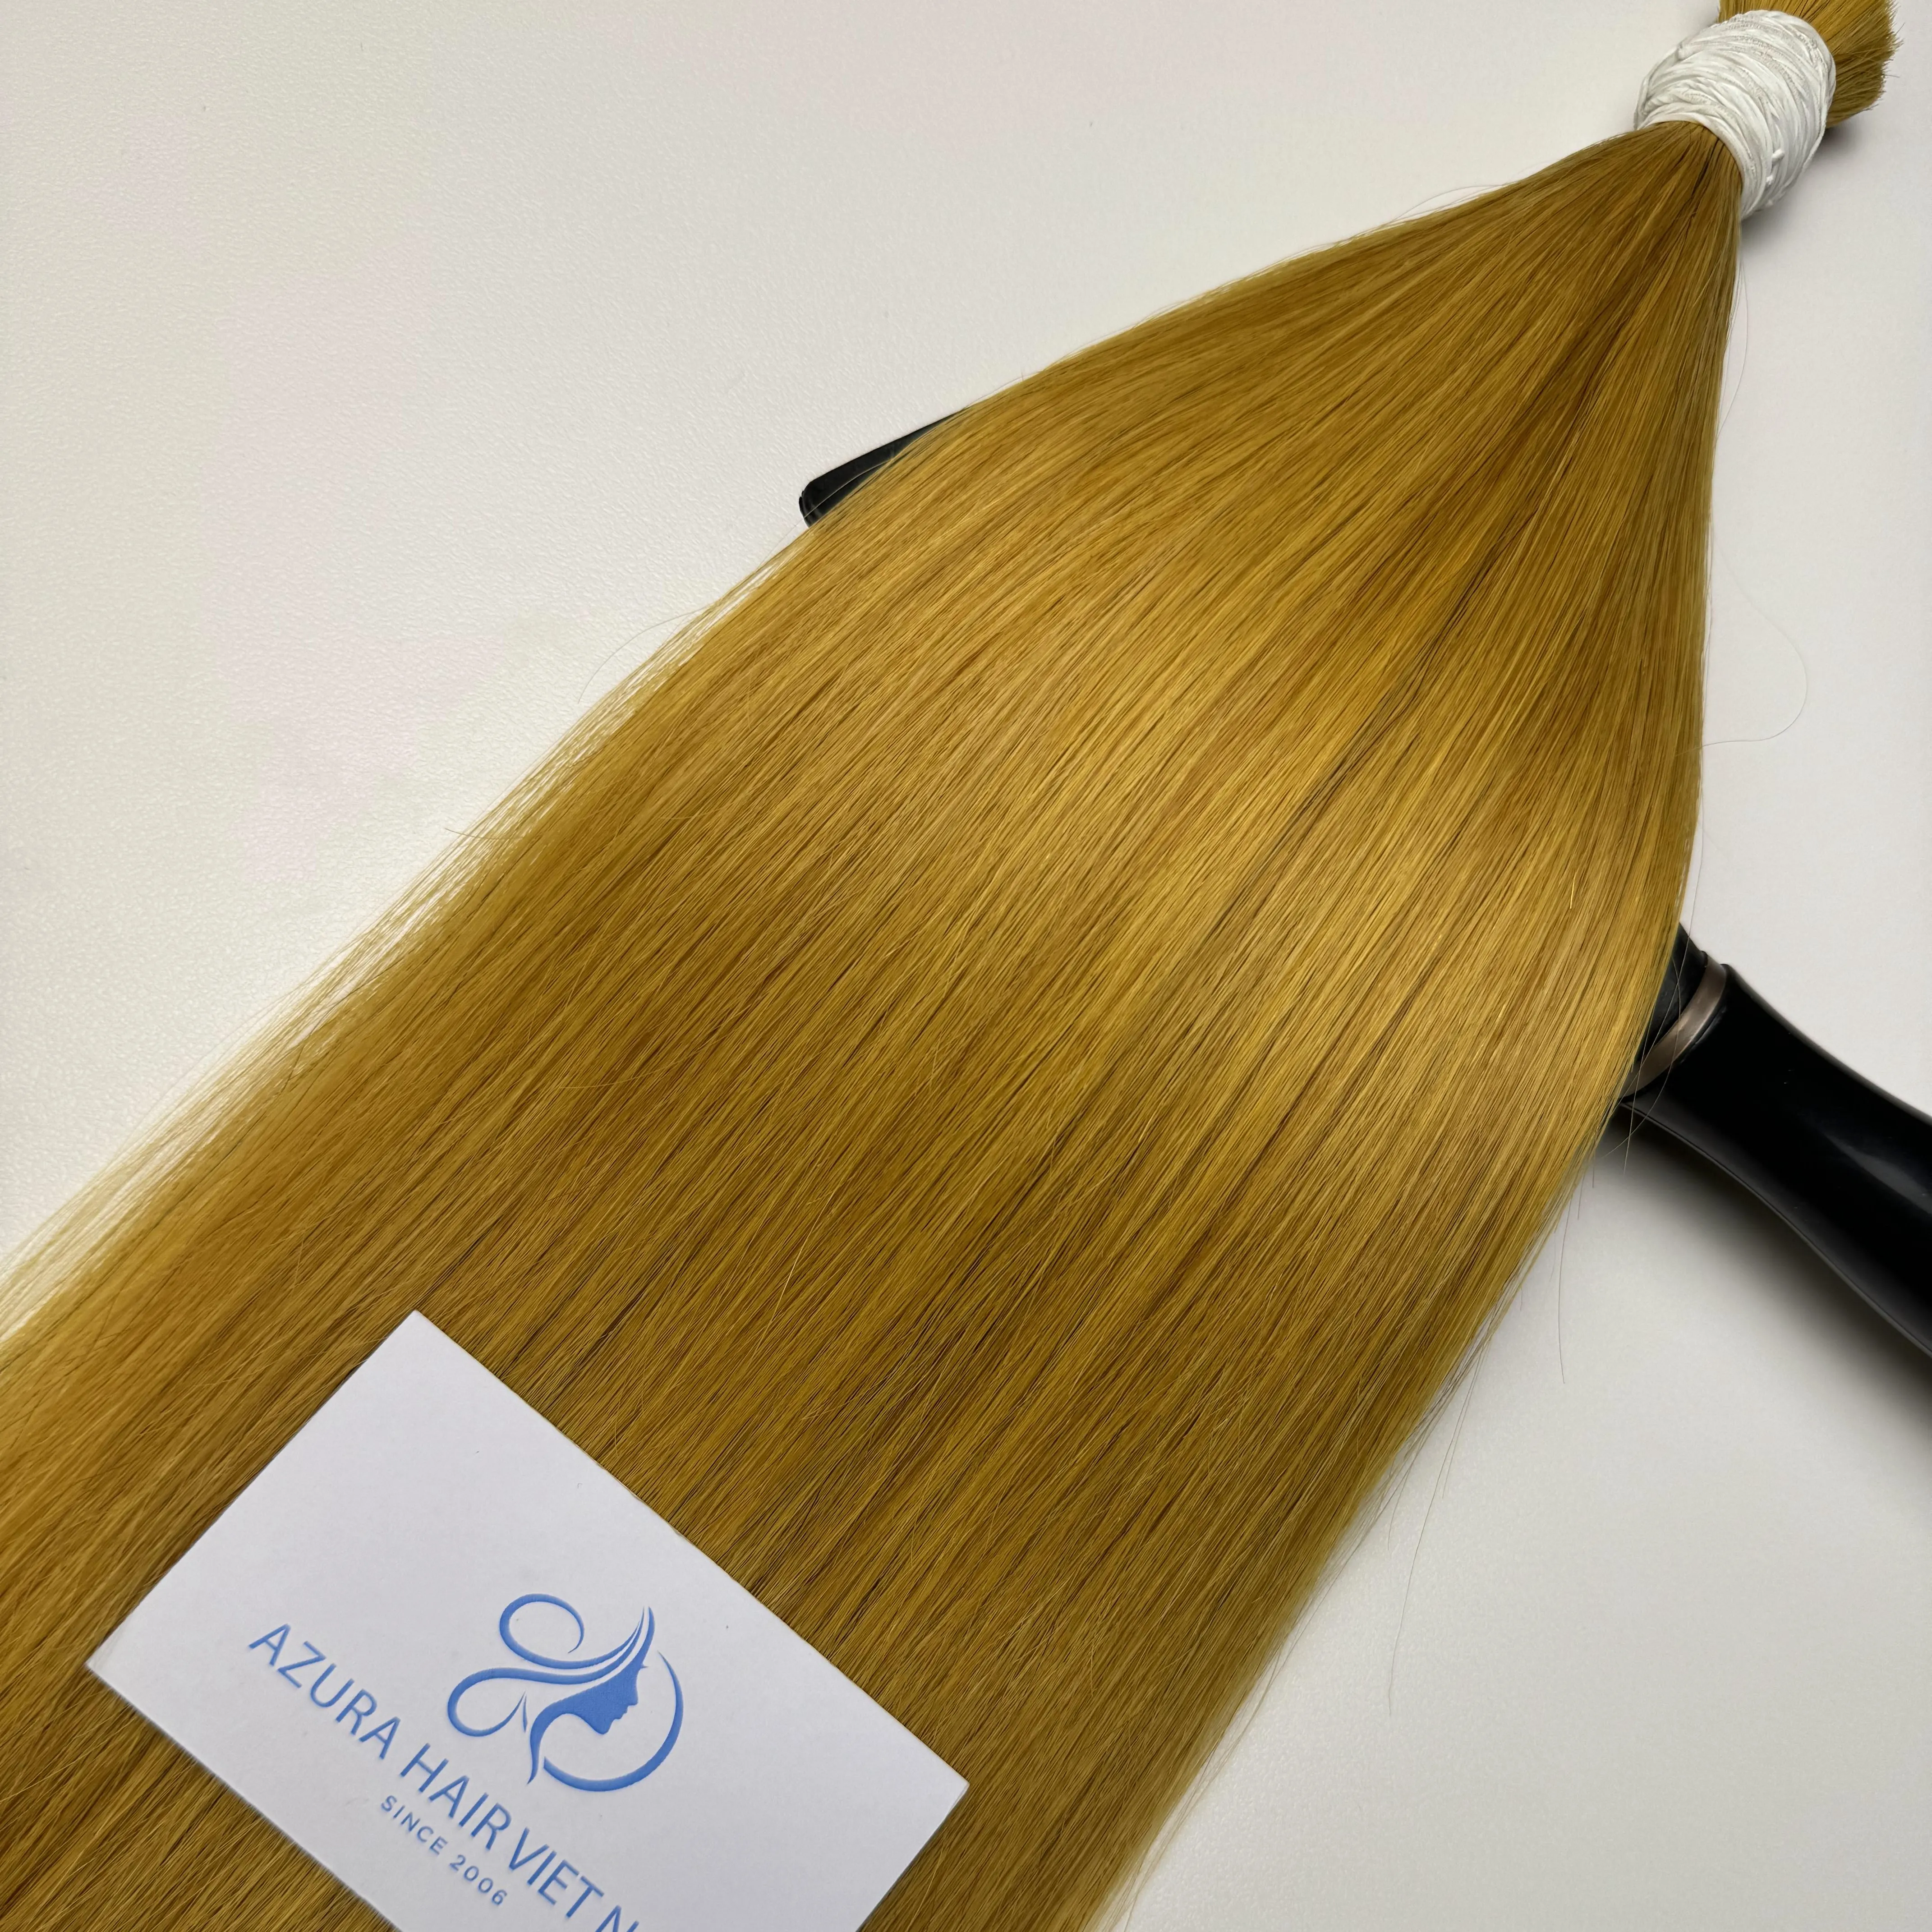 All'ingrosso della fabbrica colore dei capelli giallo 100% Remy Extension Hair umani Cuticle allineato alla massa dei capelli